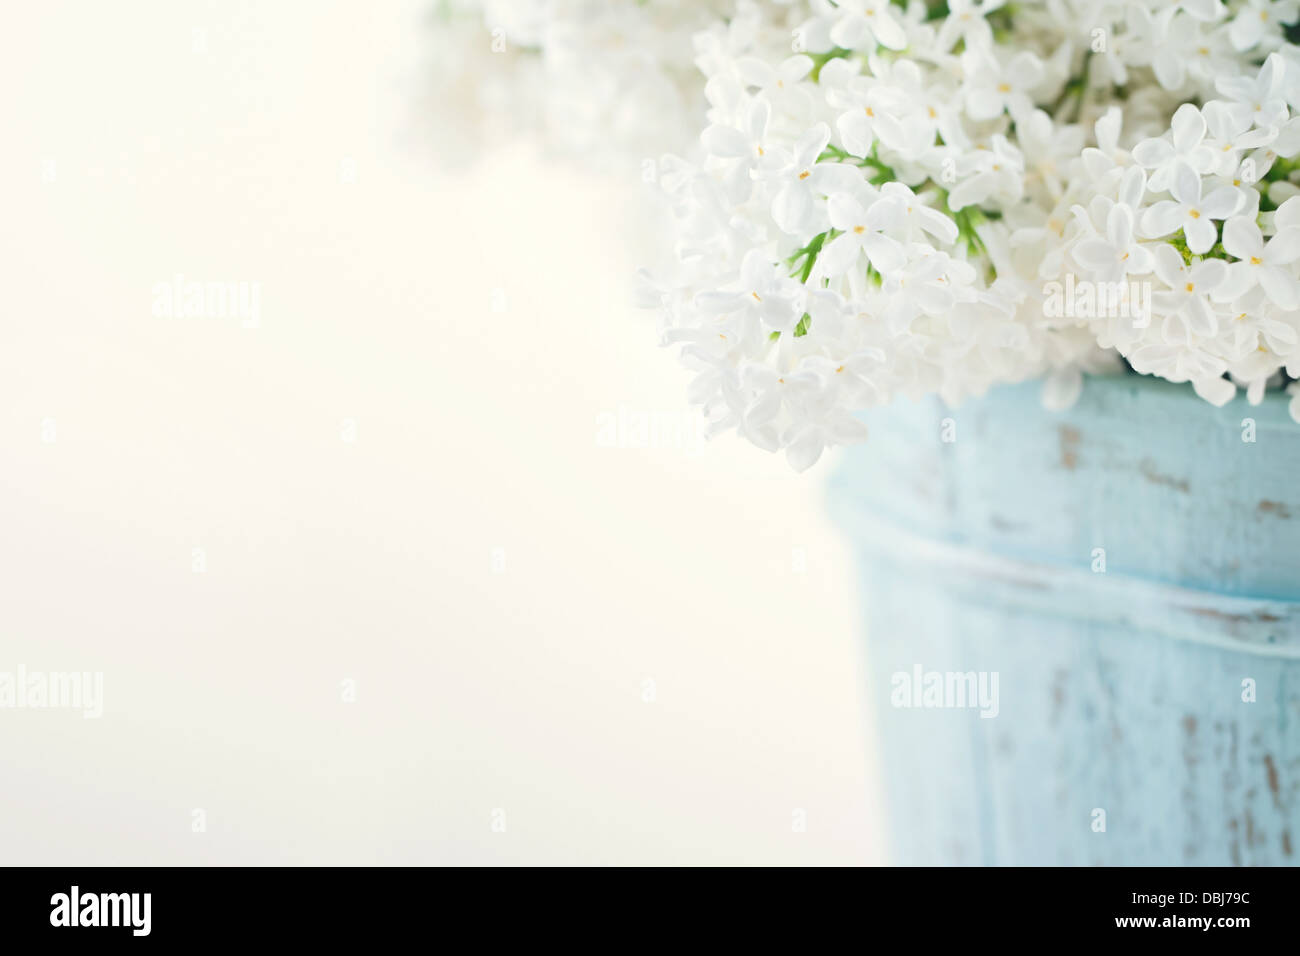 Bouquet de lilas blanc printemps des fleurs dans un vase bleu en bois clair sur fond shabby chic Banque D'Images